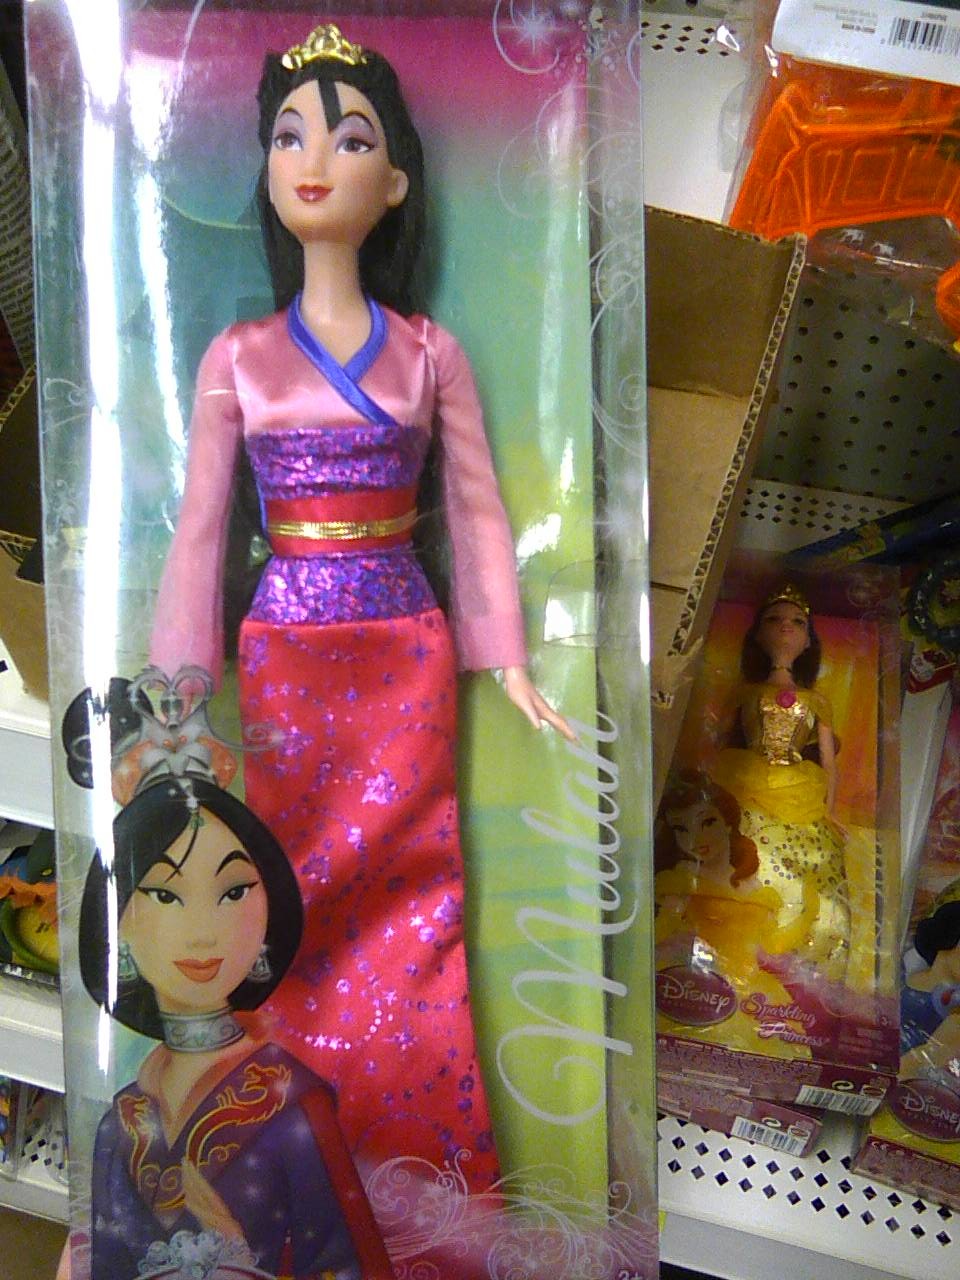 Mulan Barbie – Leaving LanguishLand